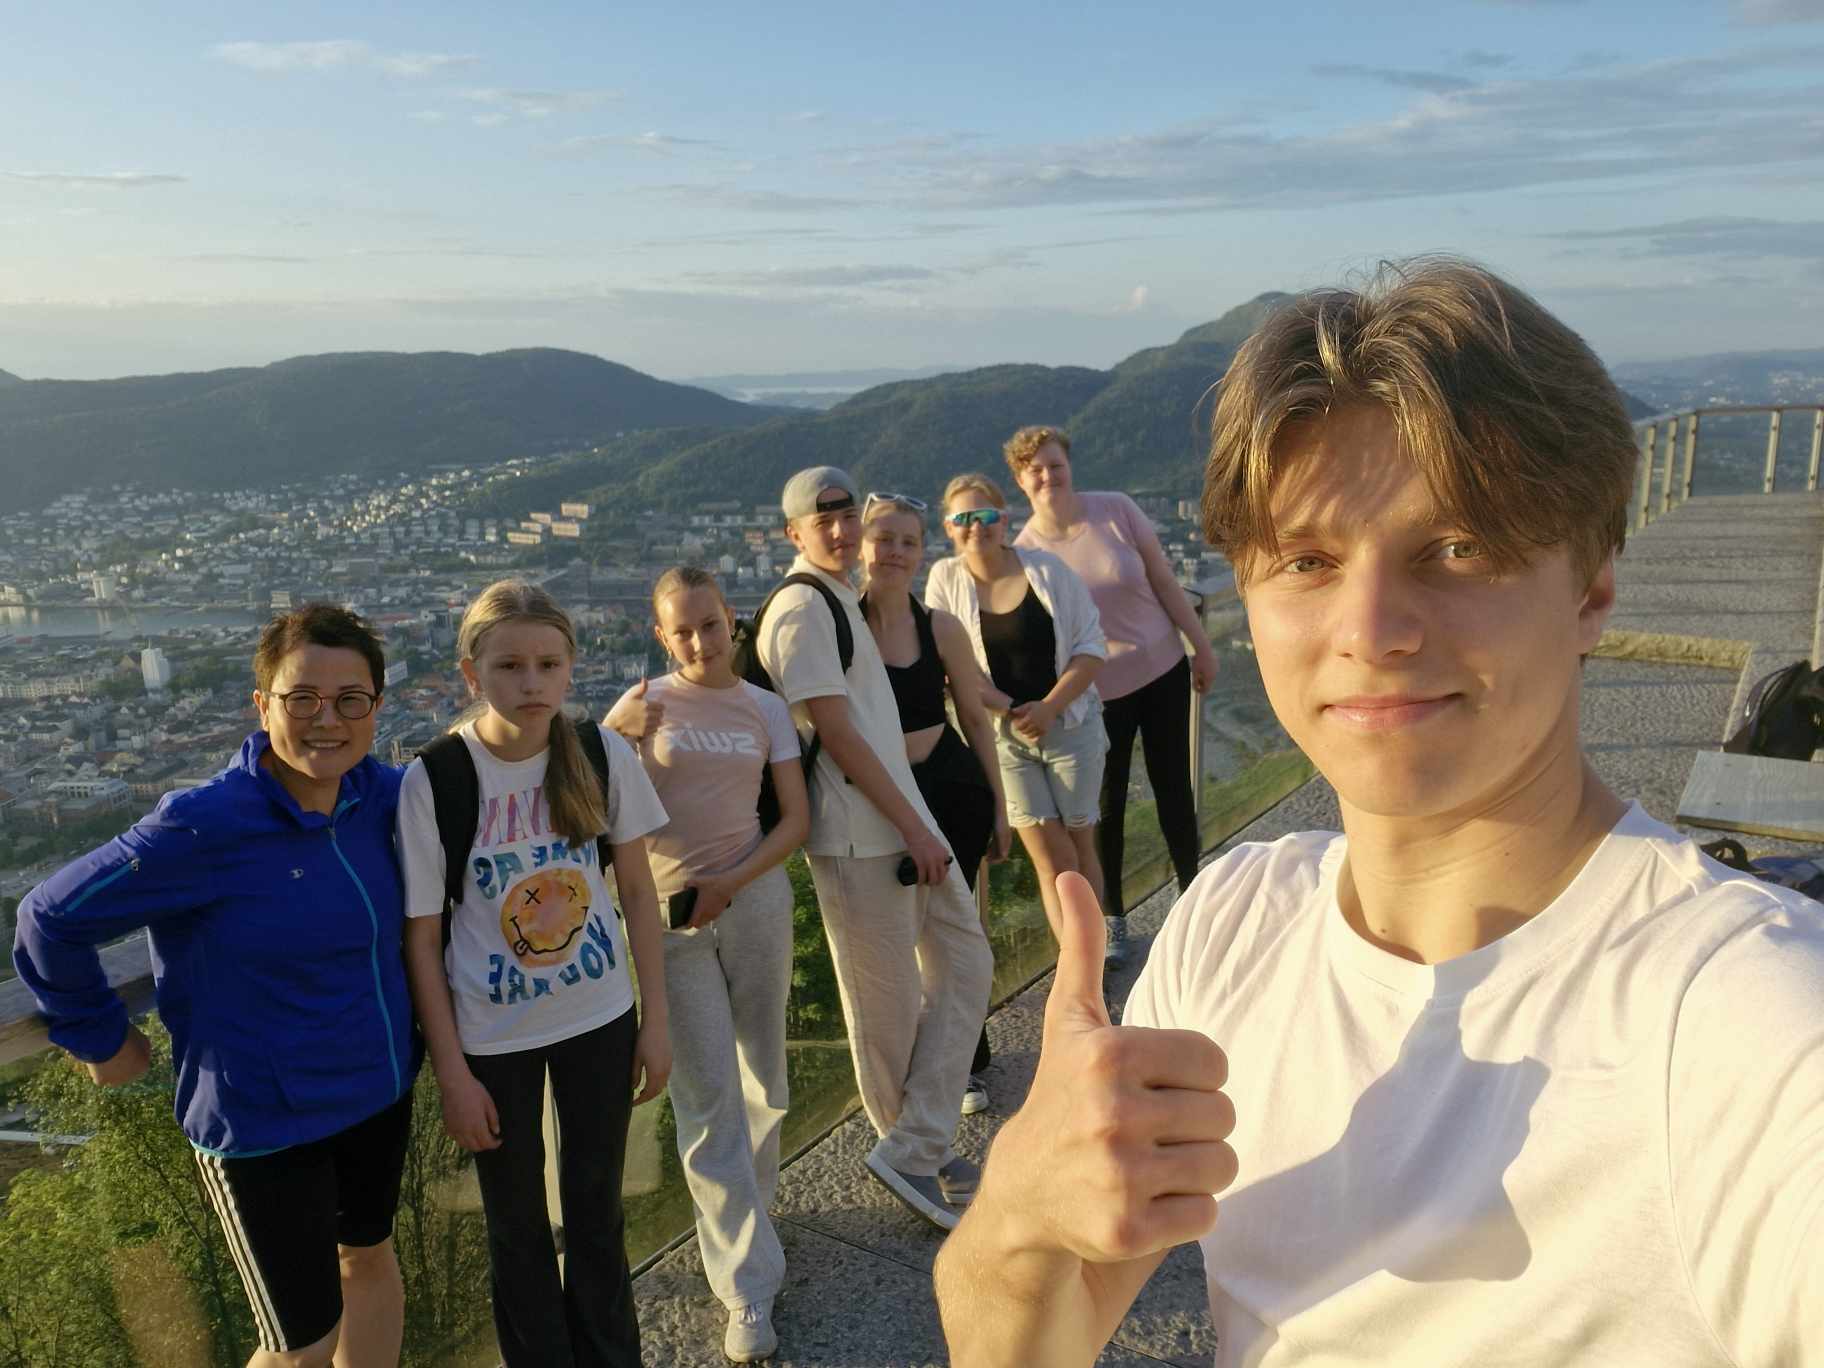 Ein ungdom tek selfie med tommelen opp, bak står fleire ungdommar og smiler til kameraet. Dei er oppe på Føyen og vi ser Bergen i bakgrunnen.